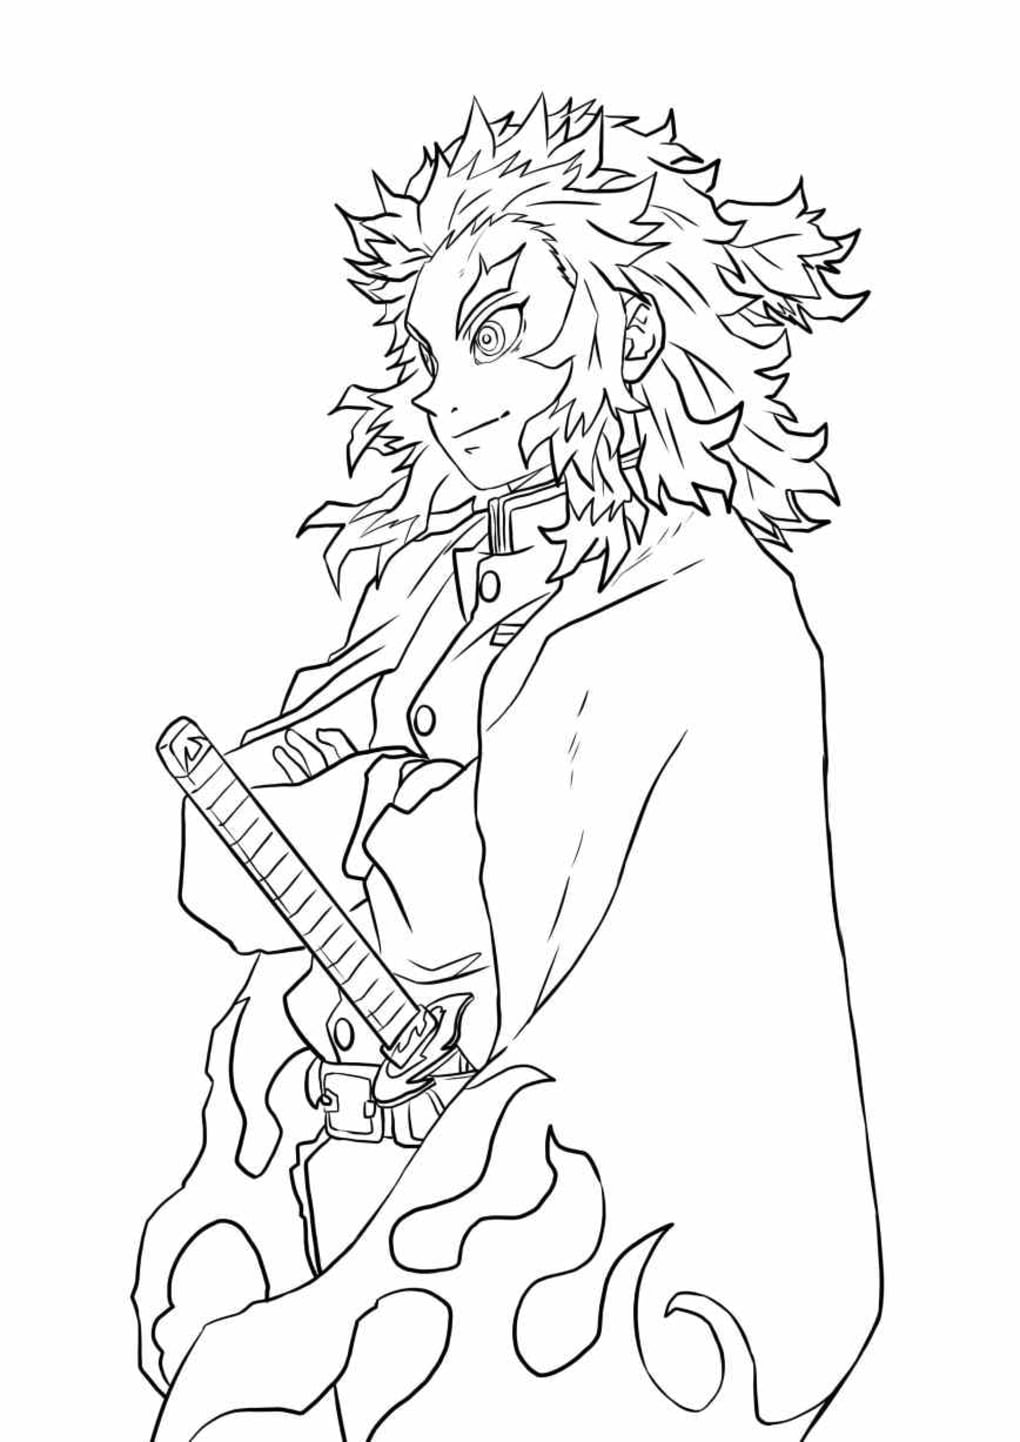 Aprenda á desenhar personagens de Kimetsu no Yaiba (Demon Slayer)